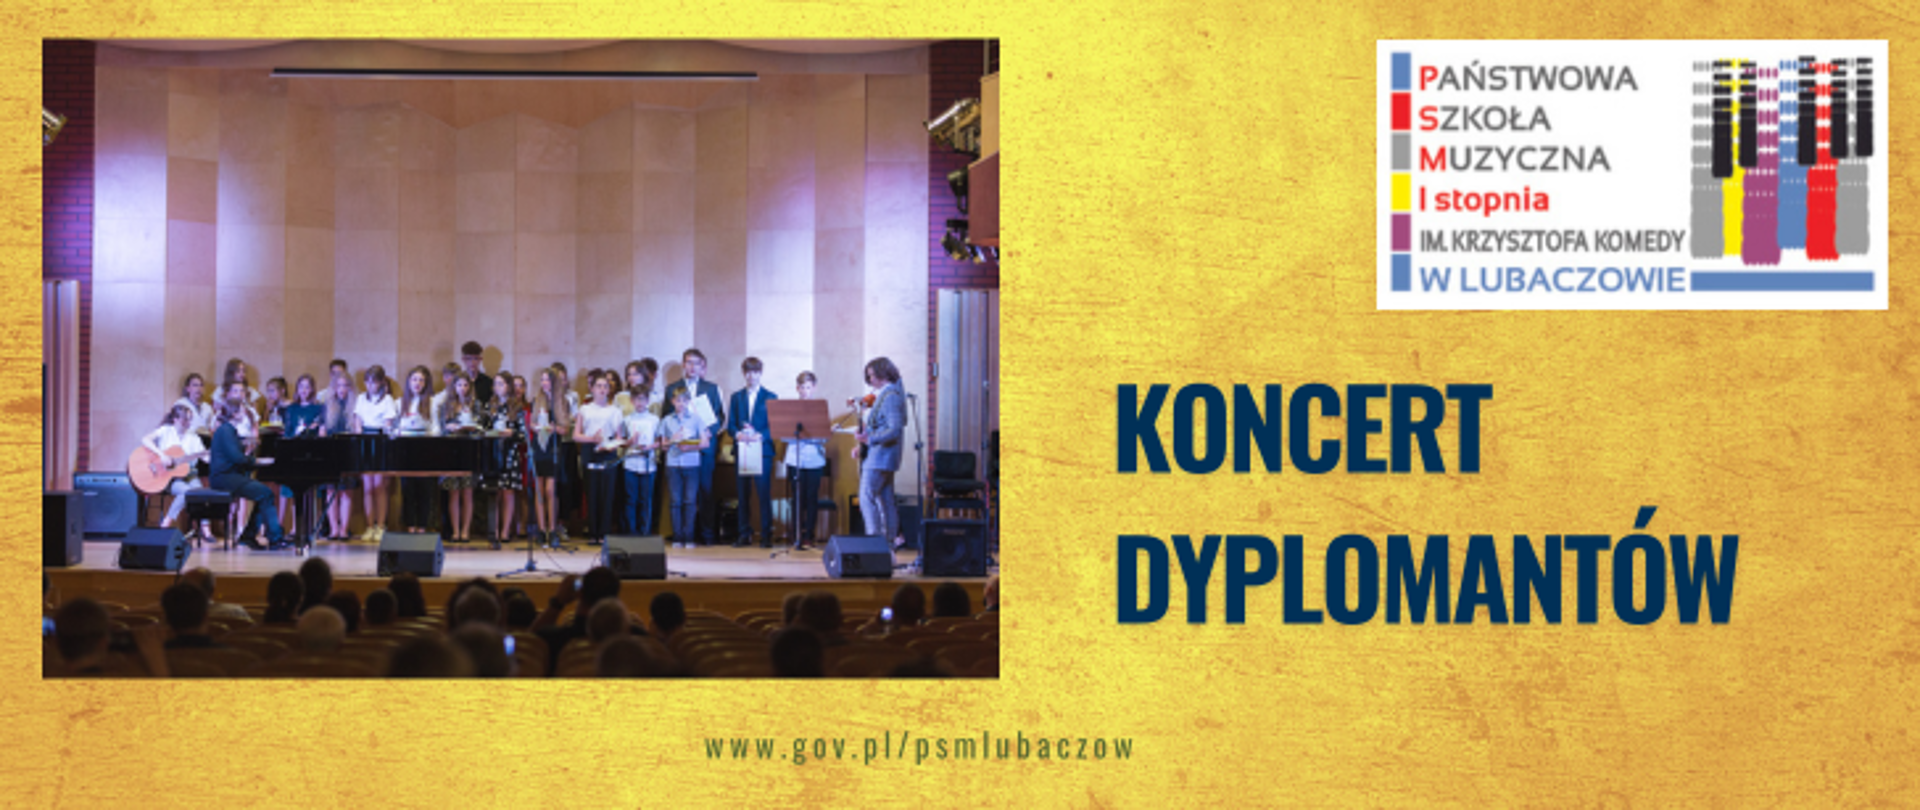 Grafika na żółtym tle z lewej strony zdjecie dyplomantów podczas wspólnego śpiewania, w prawym górnym rogu logo psm w Lubaczowie, poniżej napis koncert dyplomantów. W dolnej częsci grafiki adres strony internetowej szkoły.